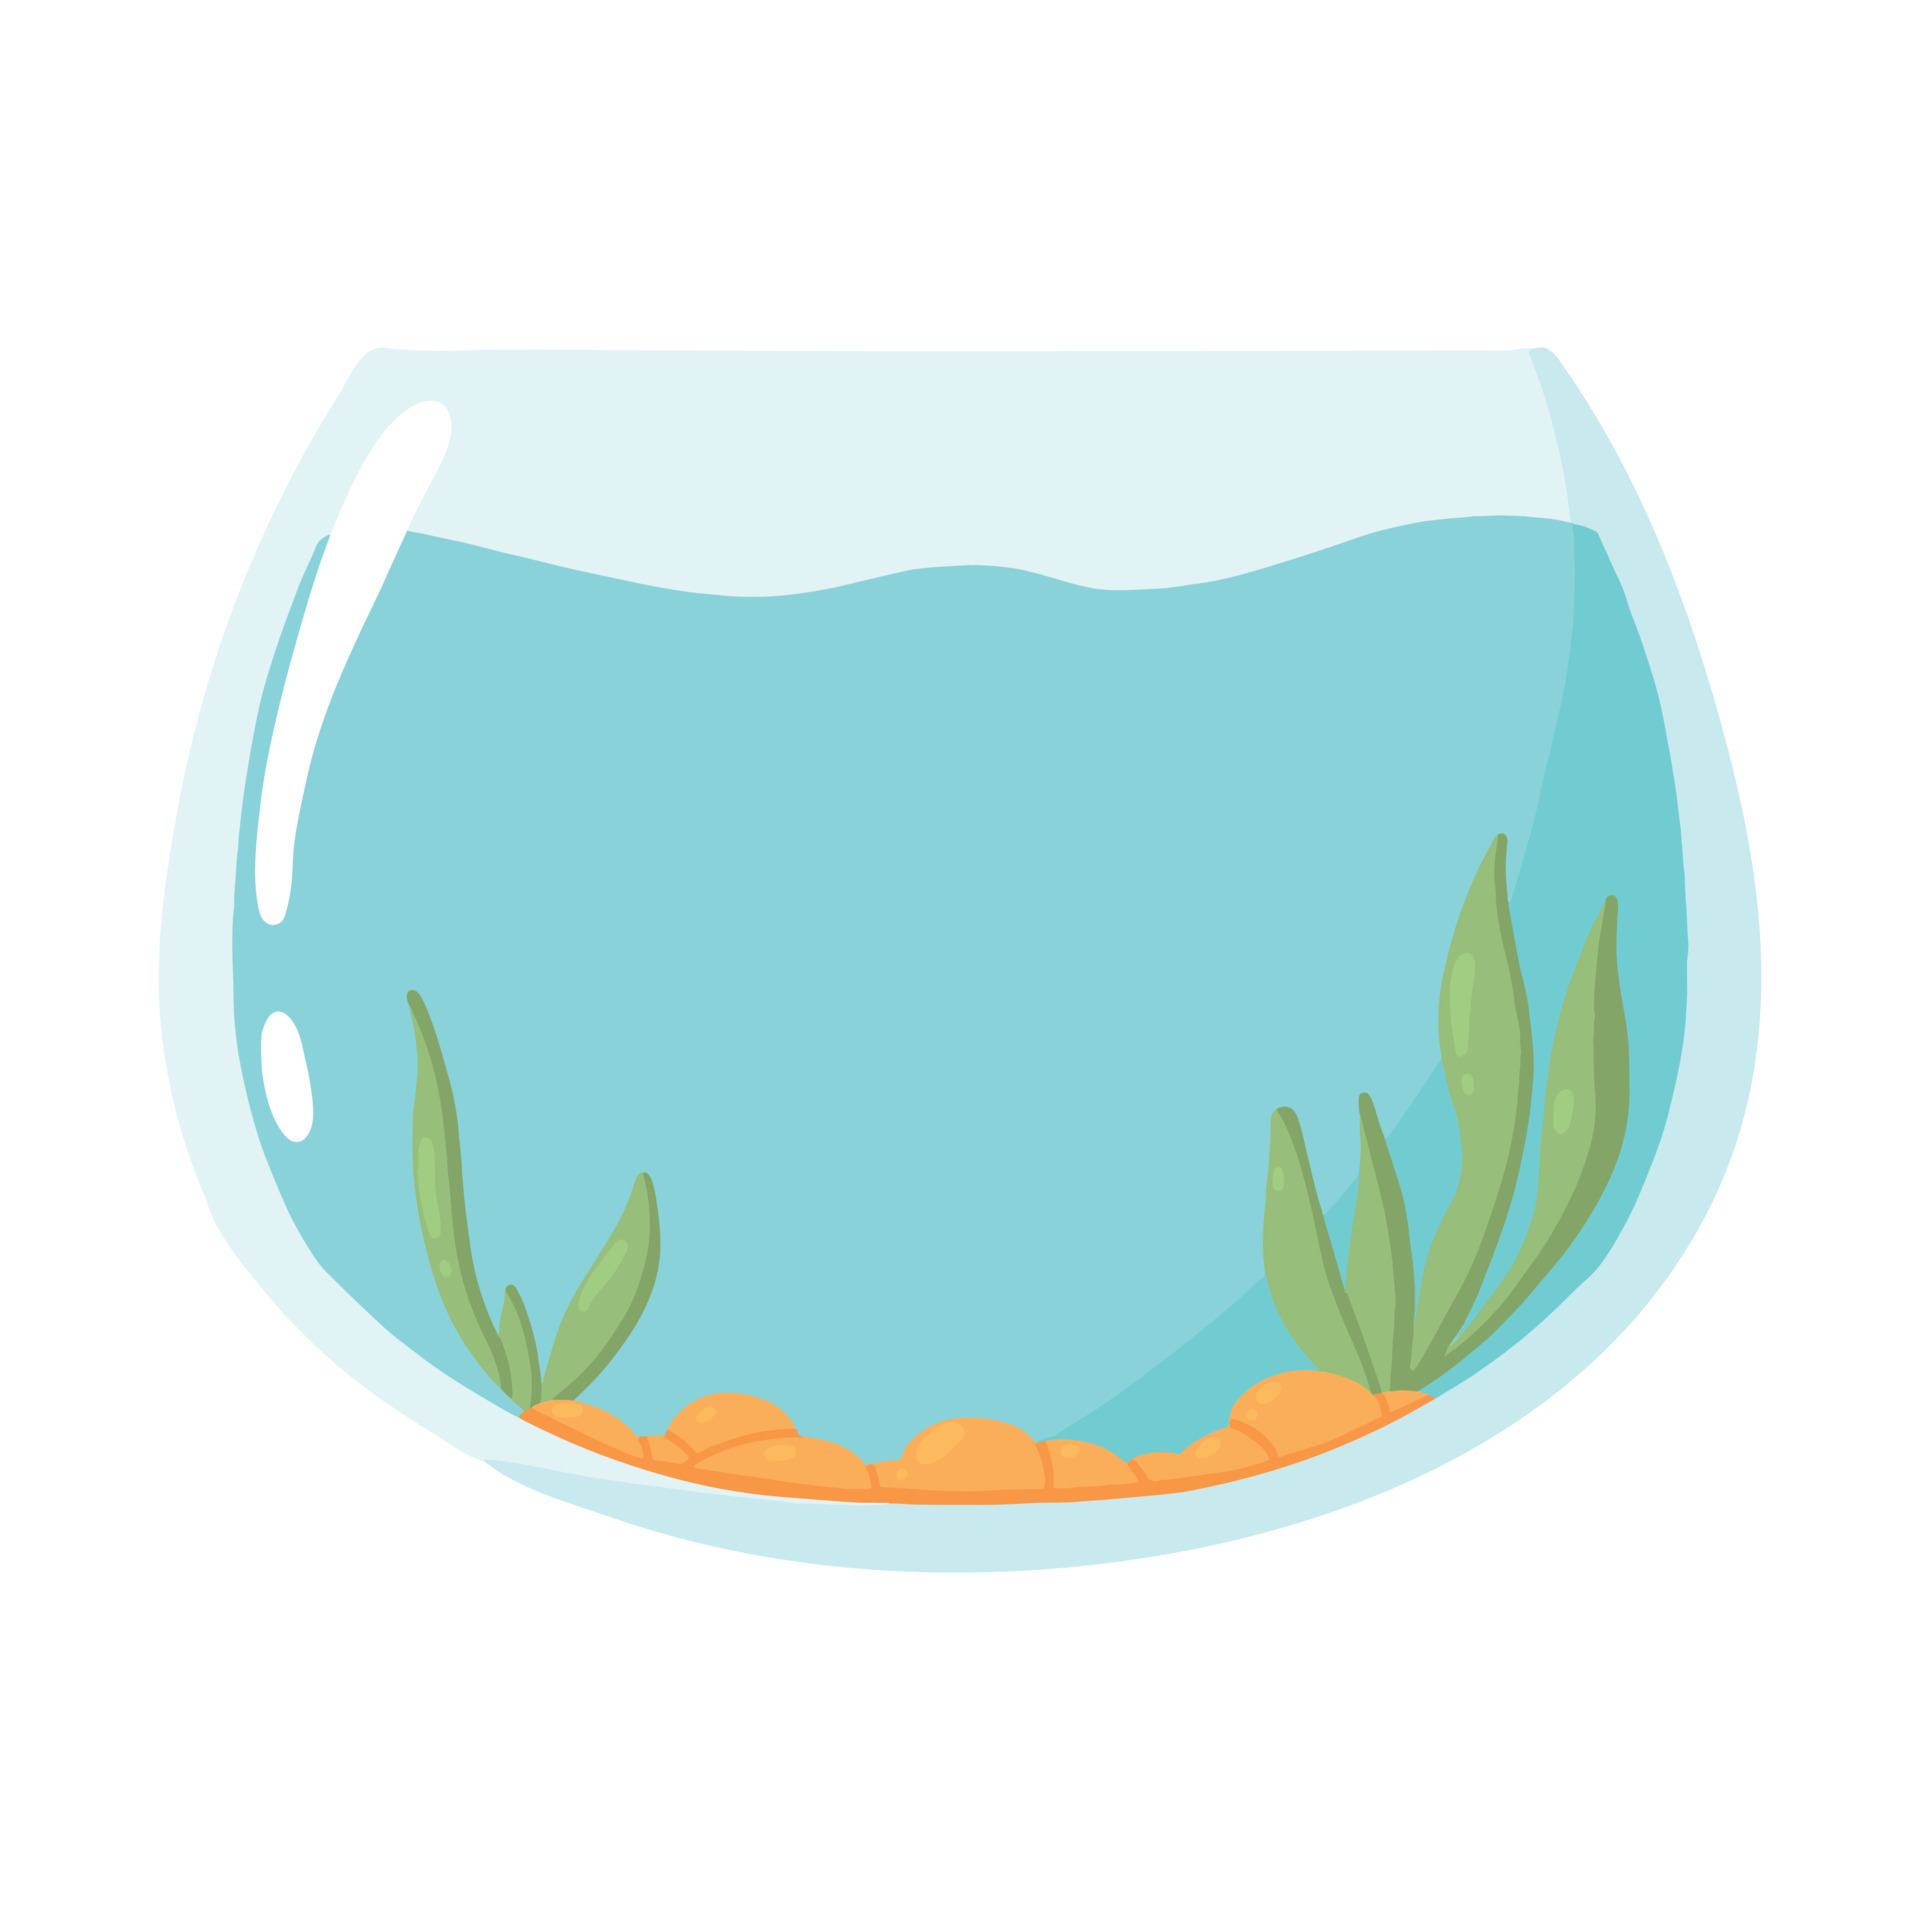 Rectangular aquarium. Empty aquarium with algae. Vector illustration in  cartoon style. 7801824 Vector Art at Vecteezy